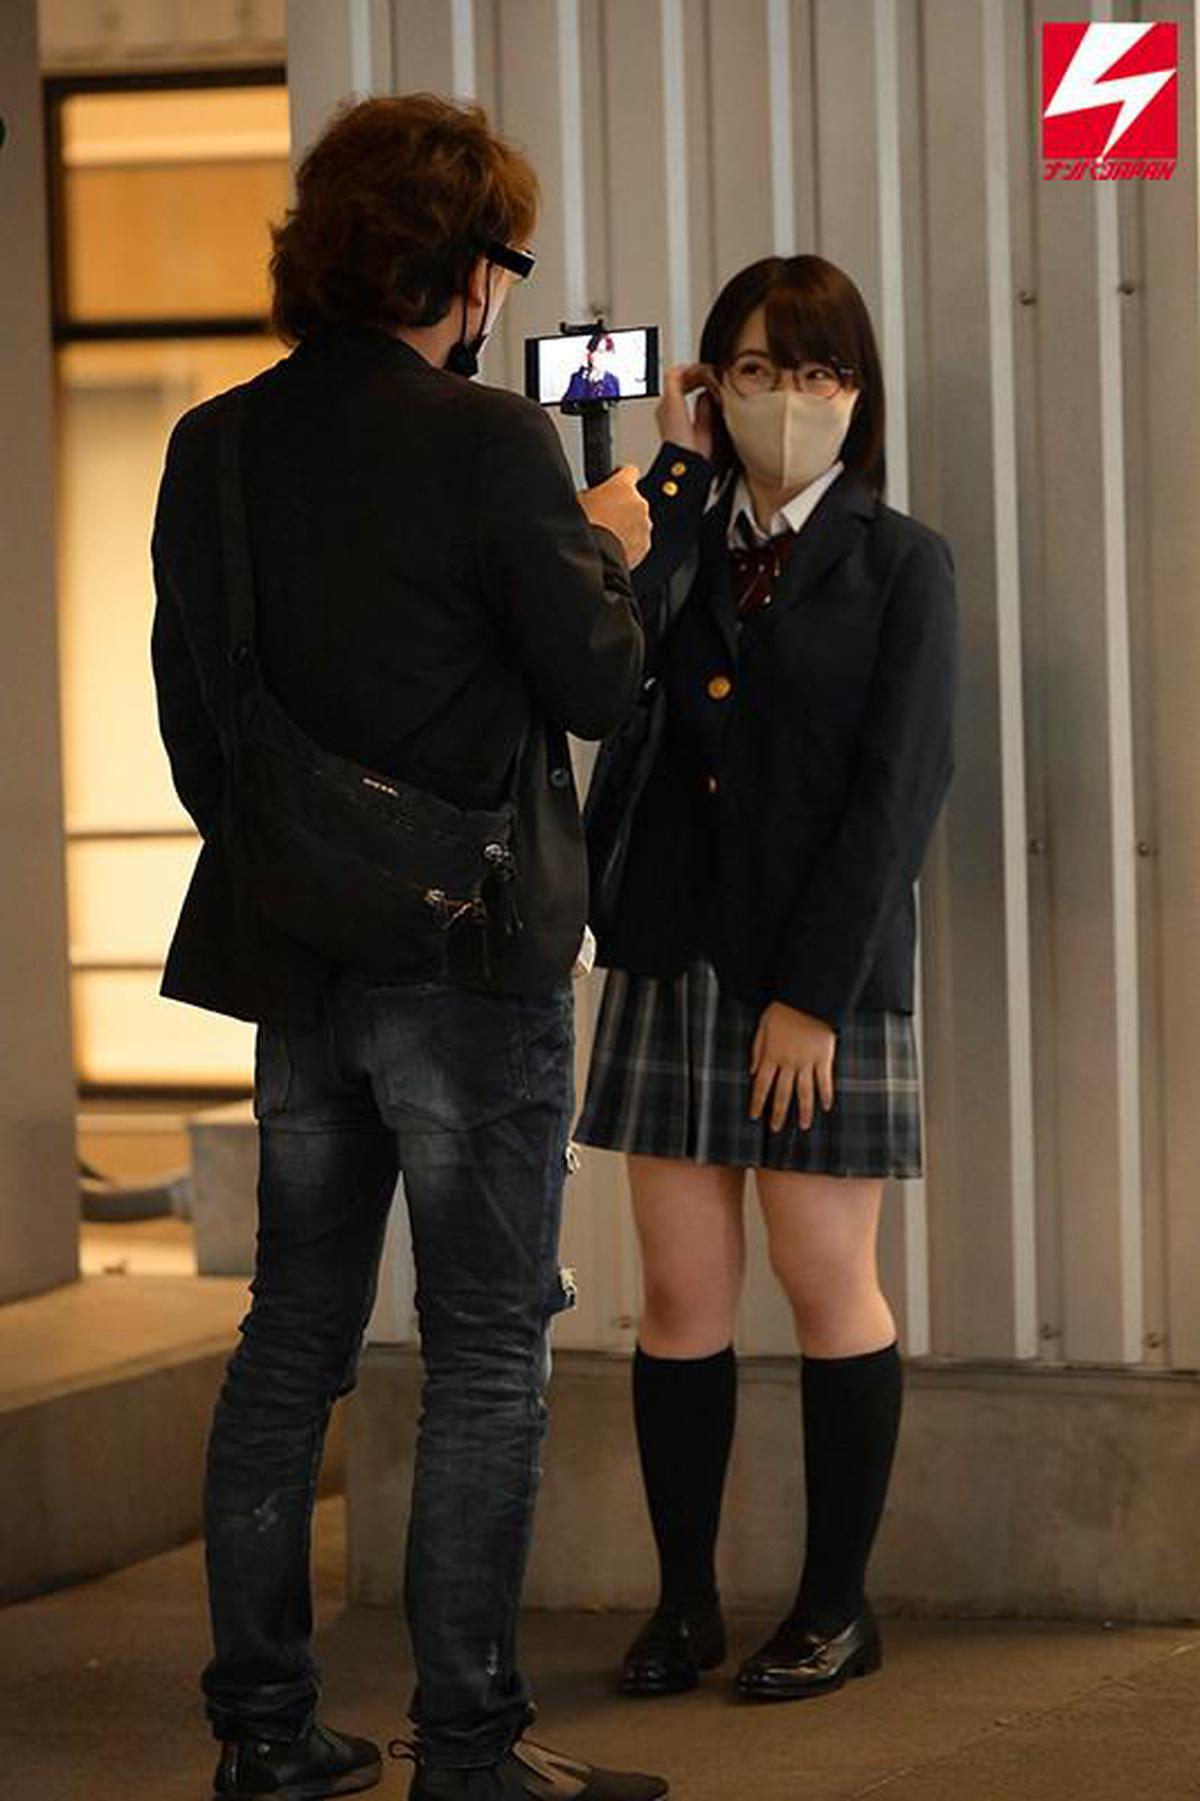 6000Kbps FHD NNPJ-429 Uniform Big Tits Girl Yarimoku Nampa ตัวละครที่ต้องการถ่ายรูปโดยตากล้องที่พบใน SNS ได้พาสาววรรณกรรมที่ทำงานพาร์ทไทม์ที่ร้านหนังสือน่ารักมาที่โรงแรมและลูบหัวนมใหญ่ของเธอ